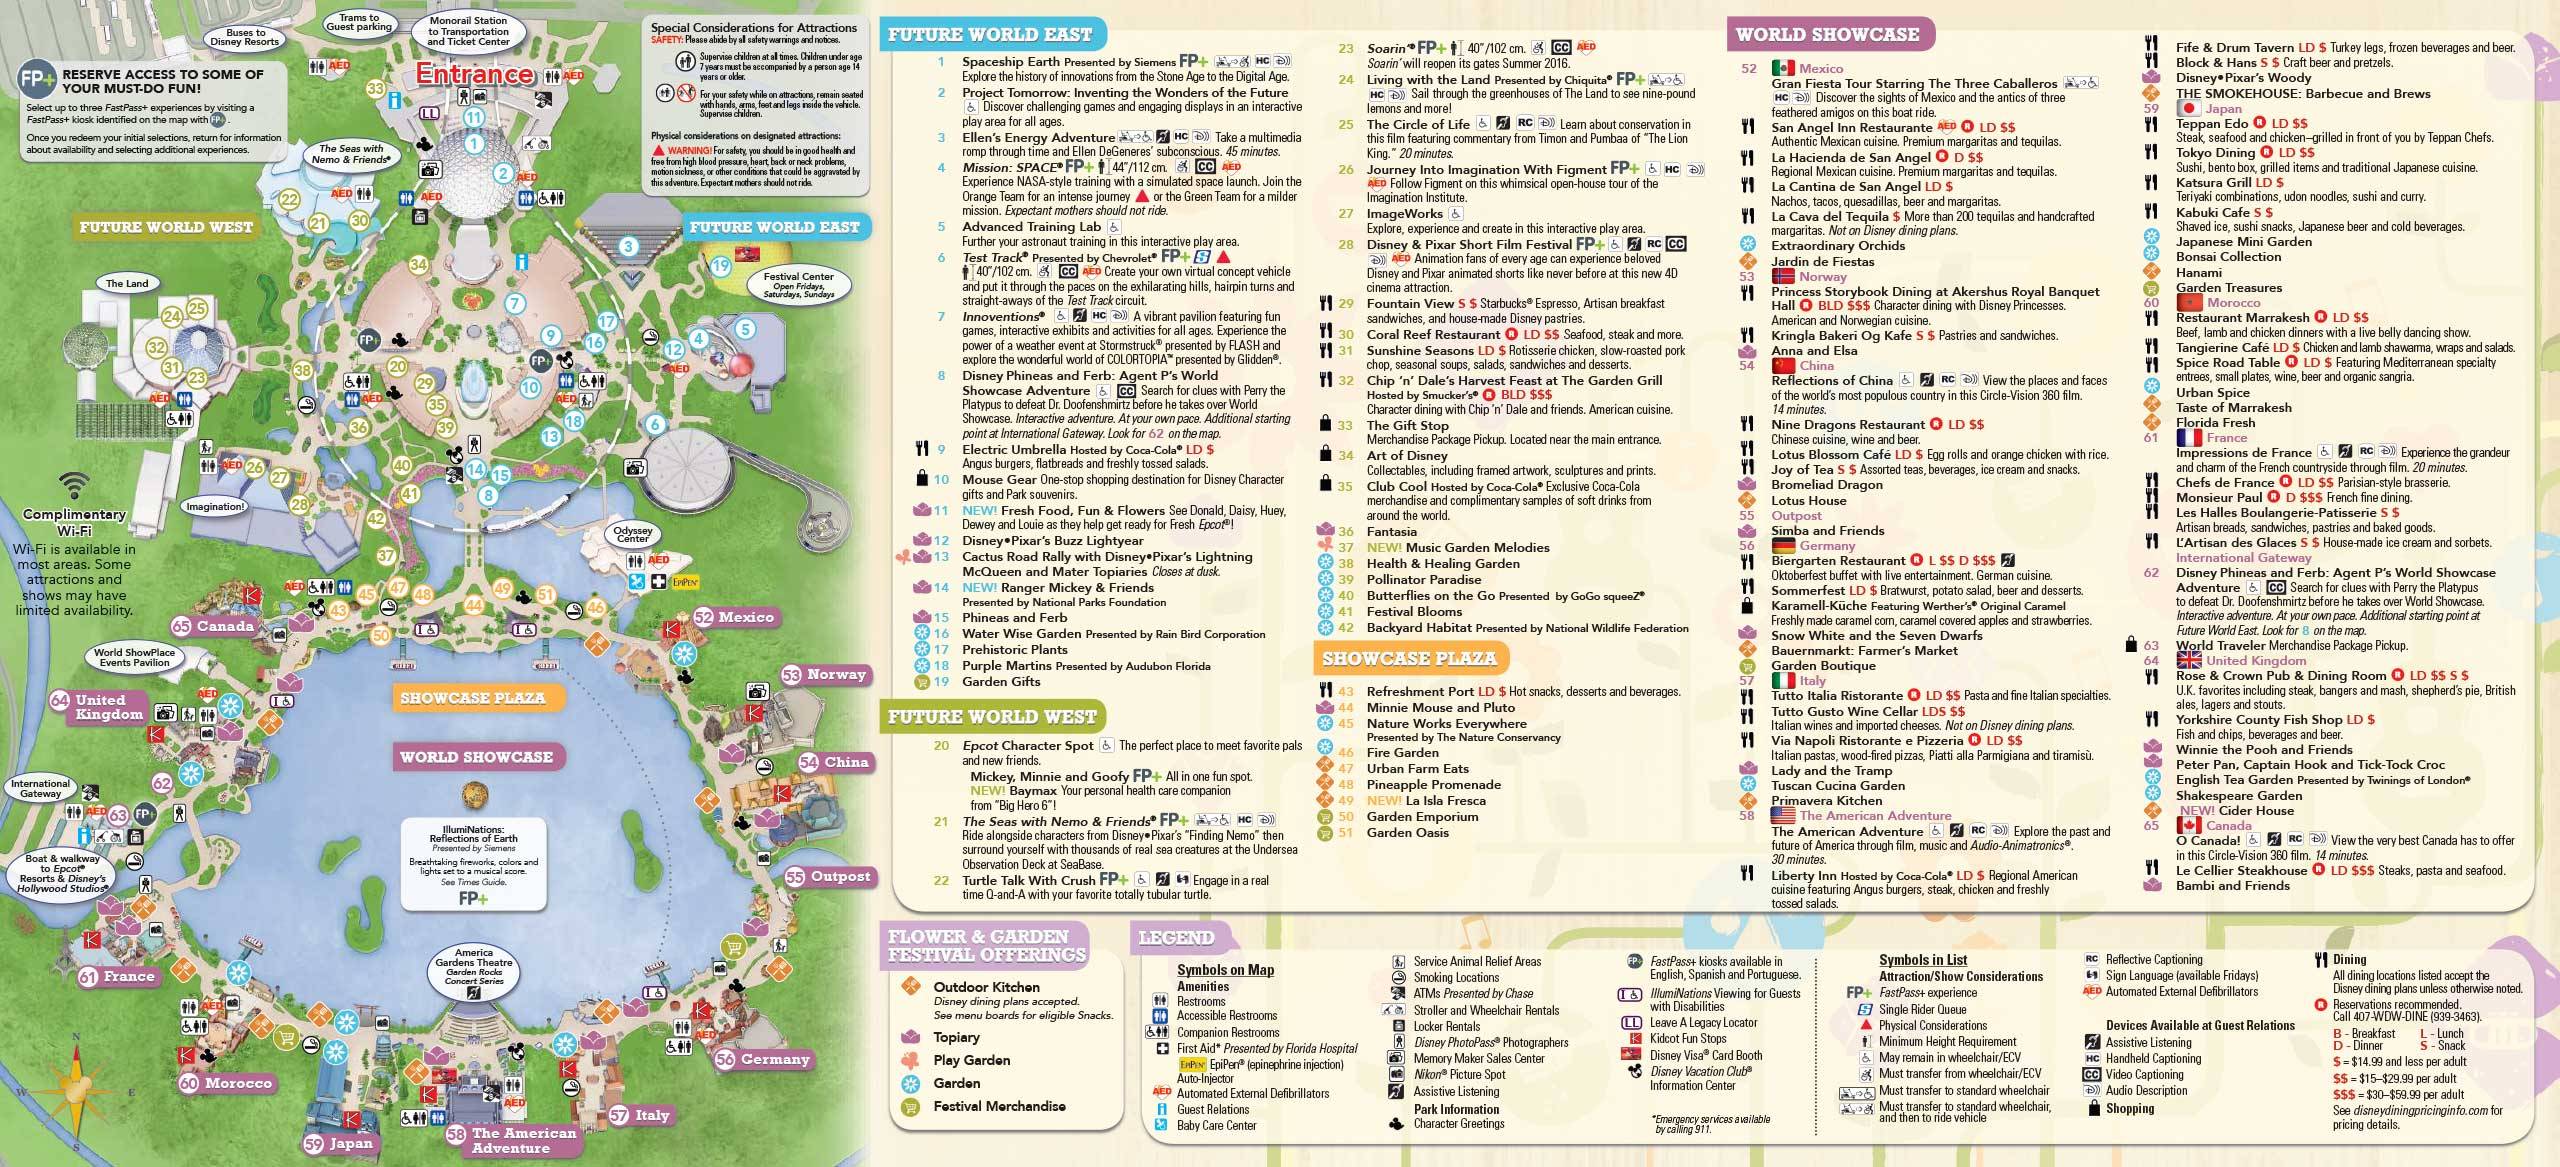 2016 Epcot Flower and Garden Festival Guidemap